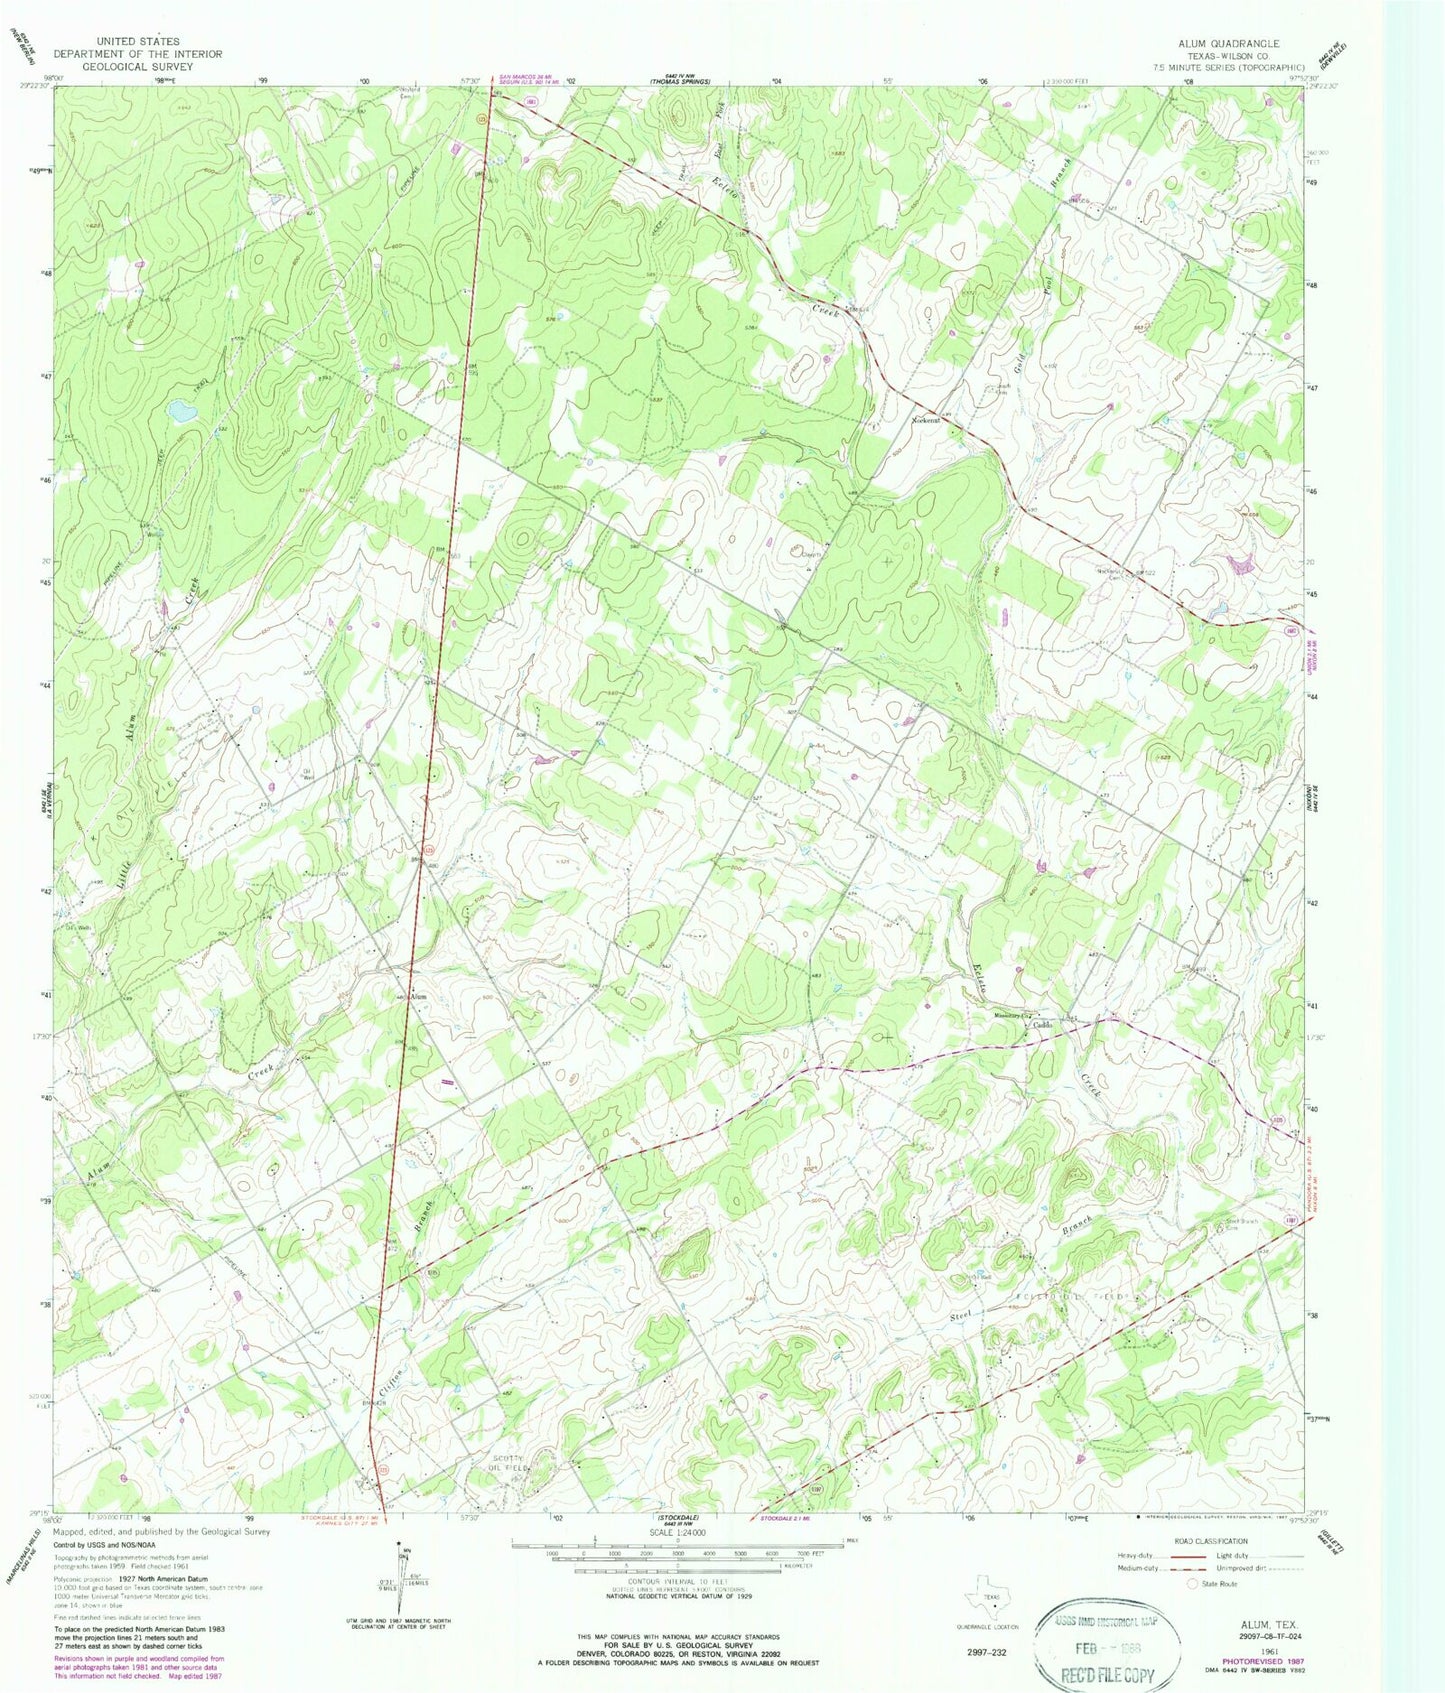 Classic USGS Alum Texas 7.5'x7.5' Topo Map Image